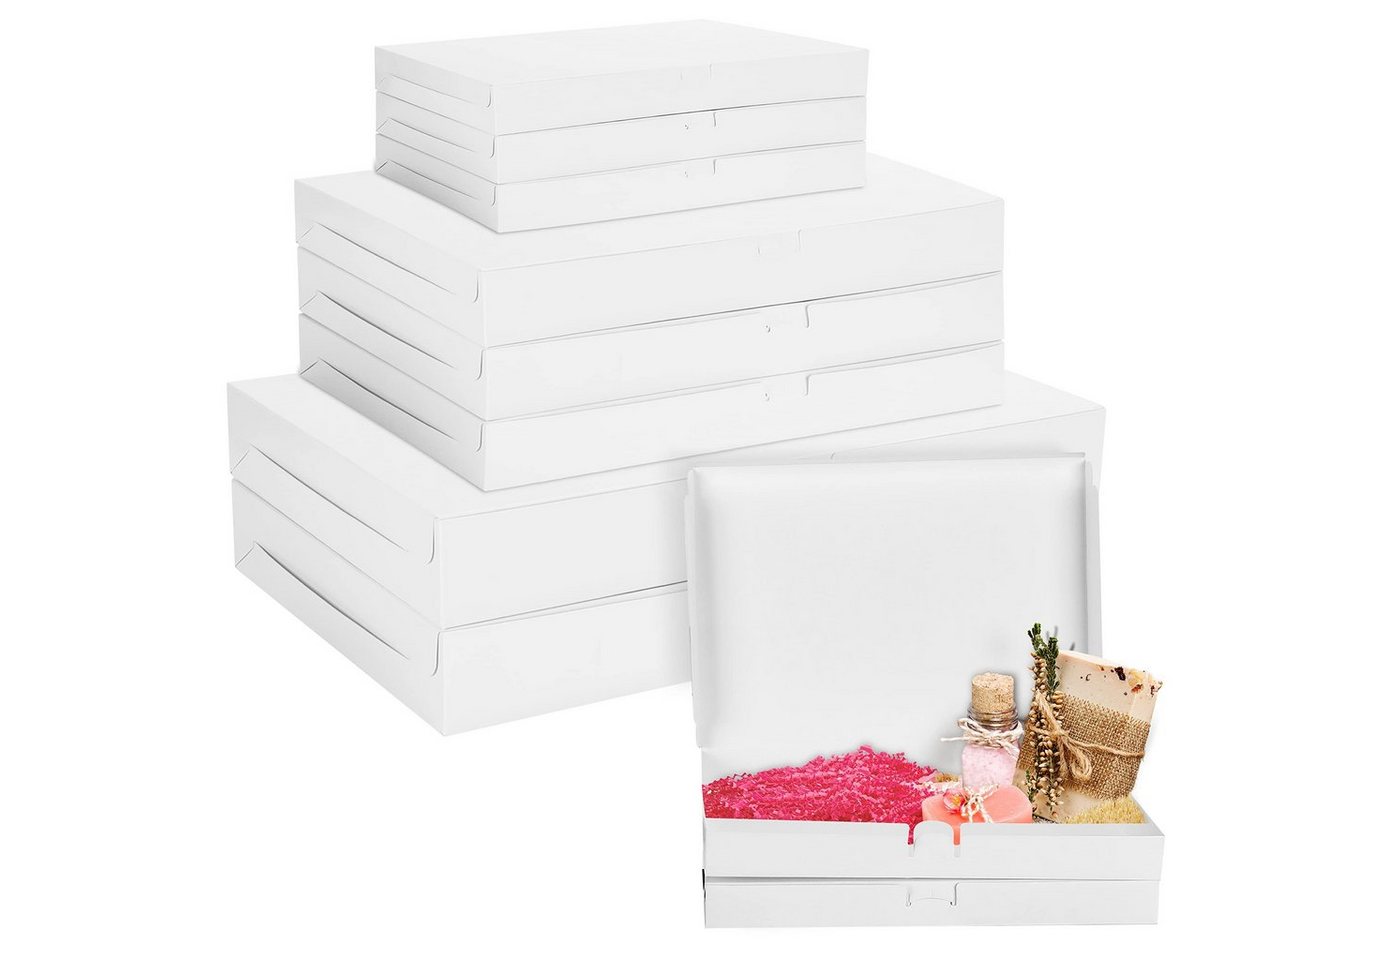 Belle Vous Geschenkbox 10er Pack Karton Geschenkboxen Weiß - Klein, Mittel & Groß, 10 Stück Karton Geschenkboxen Set Weiß - Klein, Mittel & Groß von Belle Vous